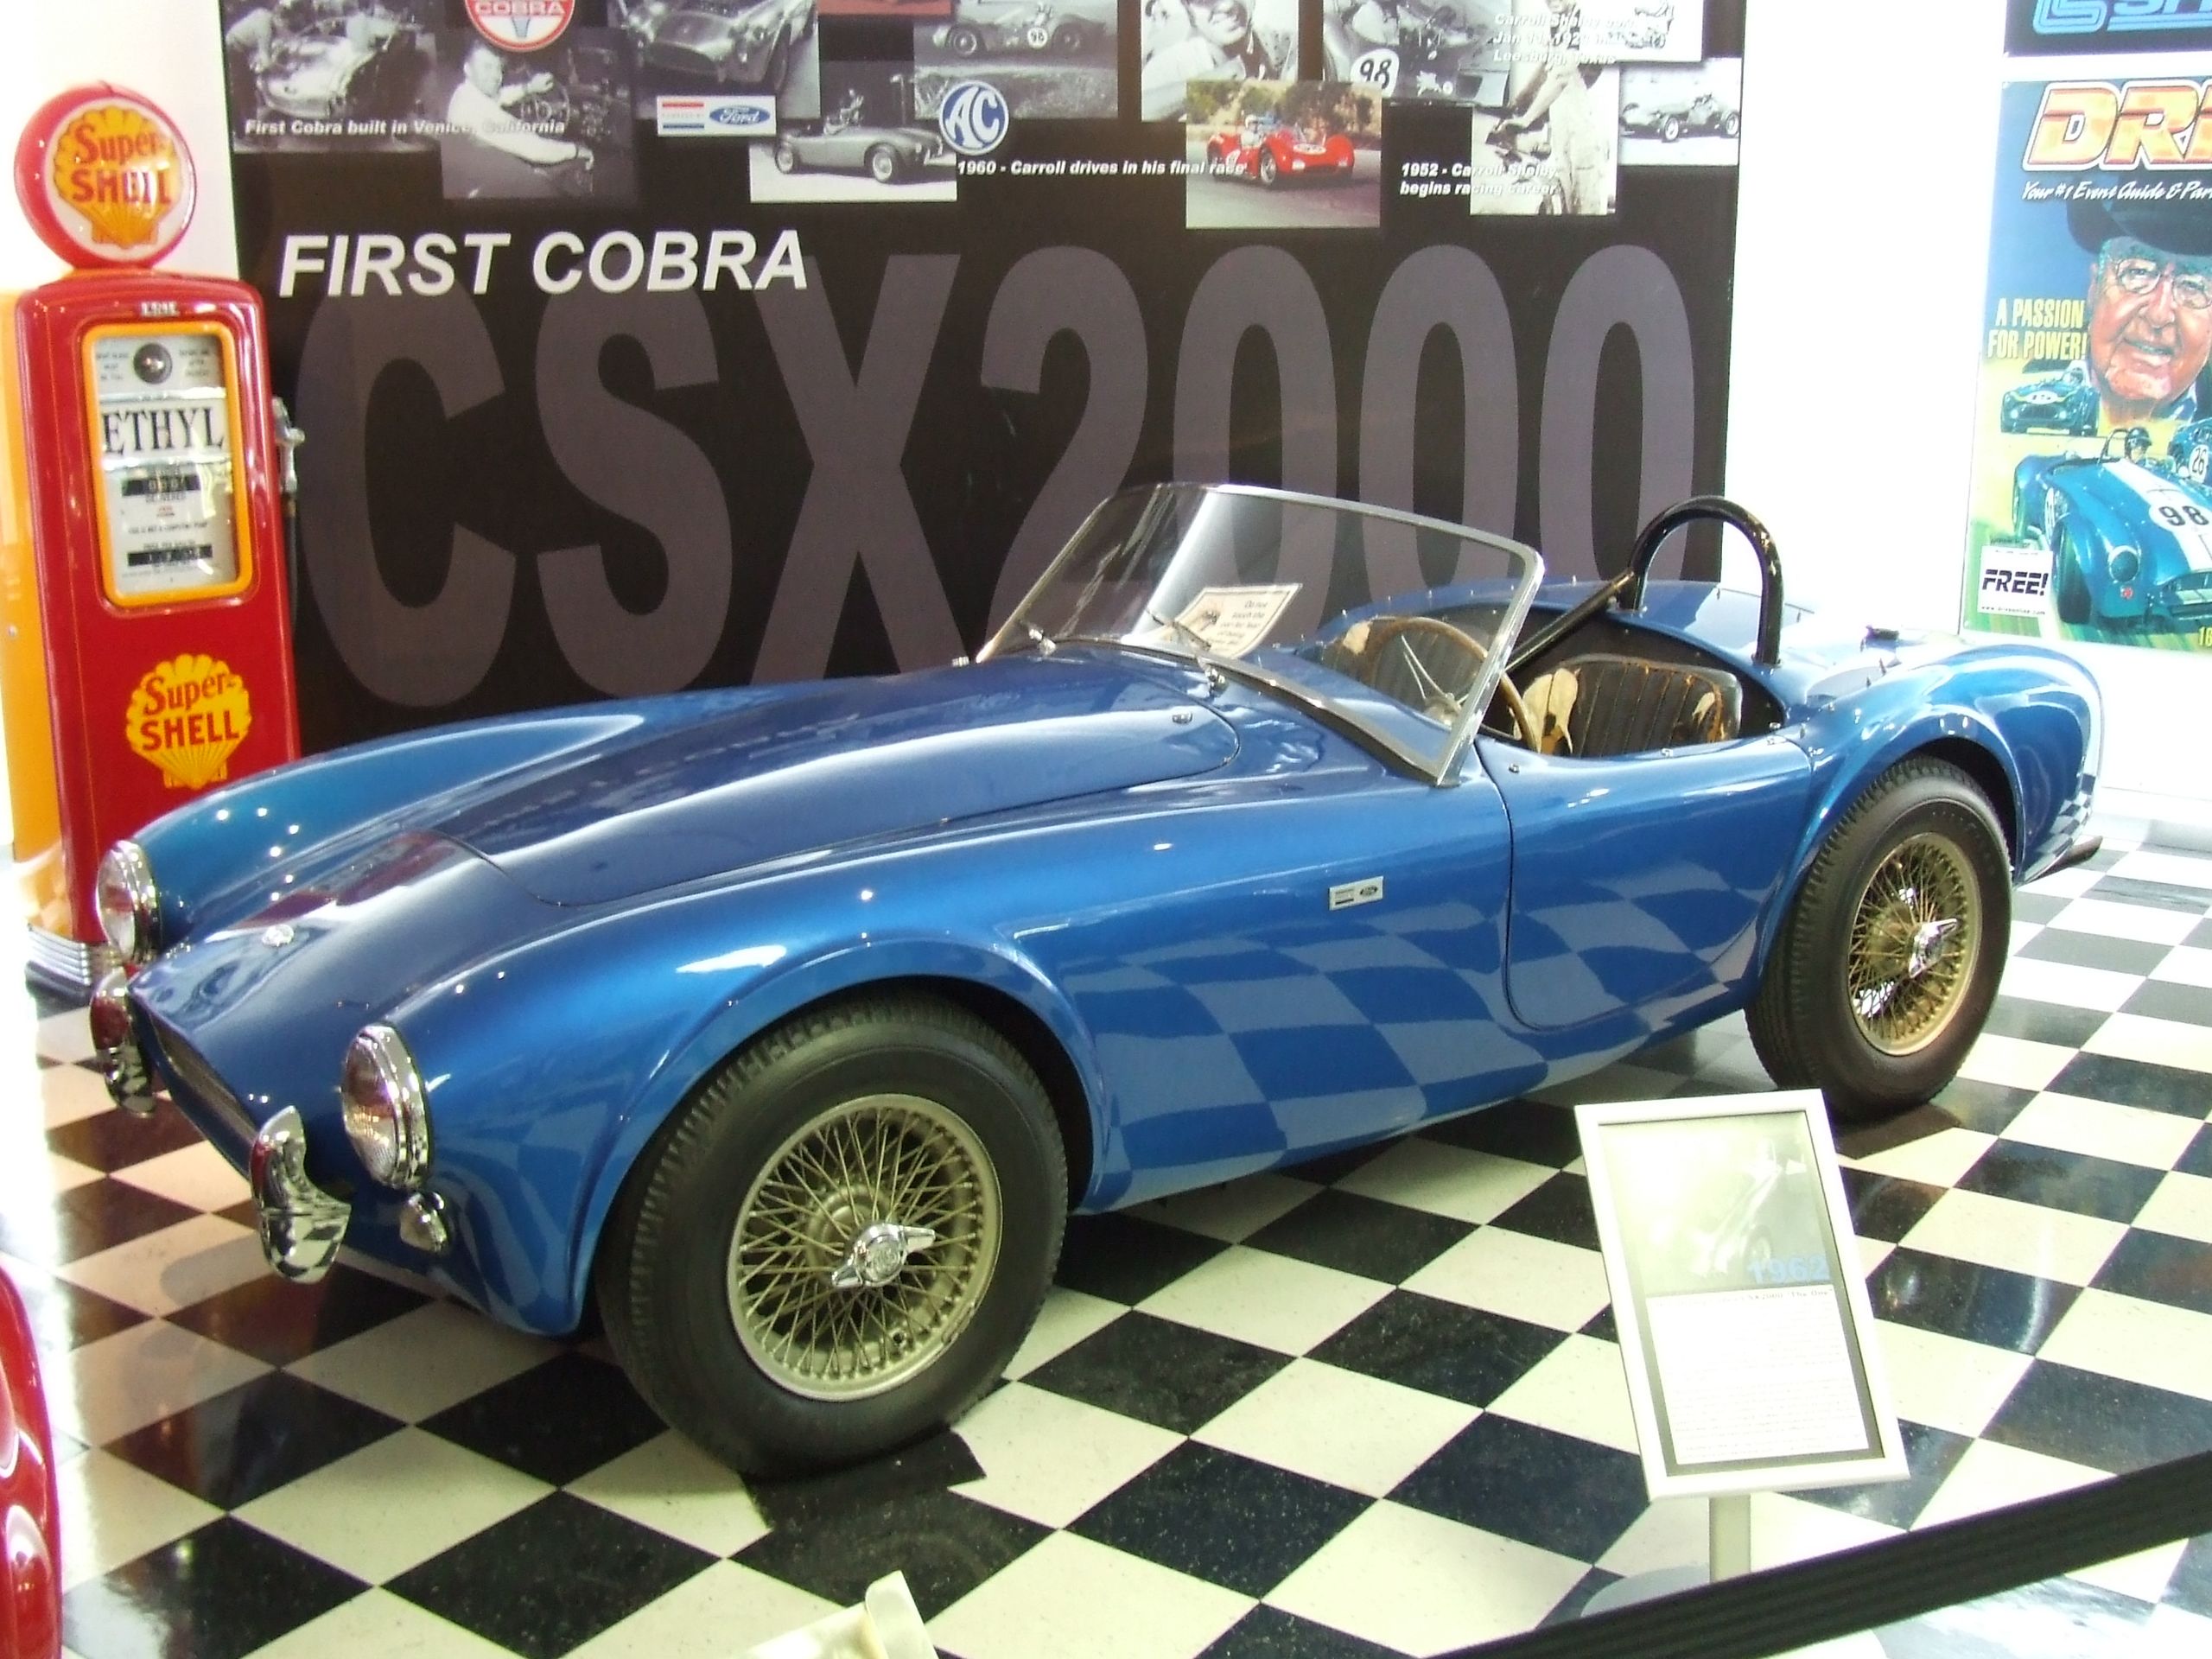 El CSX2000, el primer Cobra de la historia
By Jaydec at English Wikipedia, CC BY-SA 3.0, https://commons.wikimedia.org/w/index.php?curid=9952757